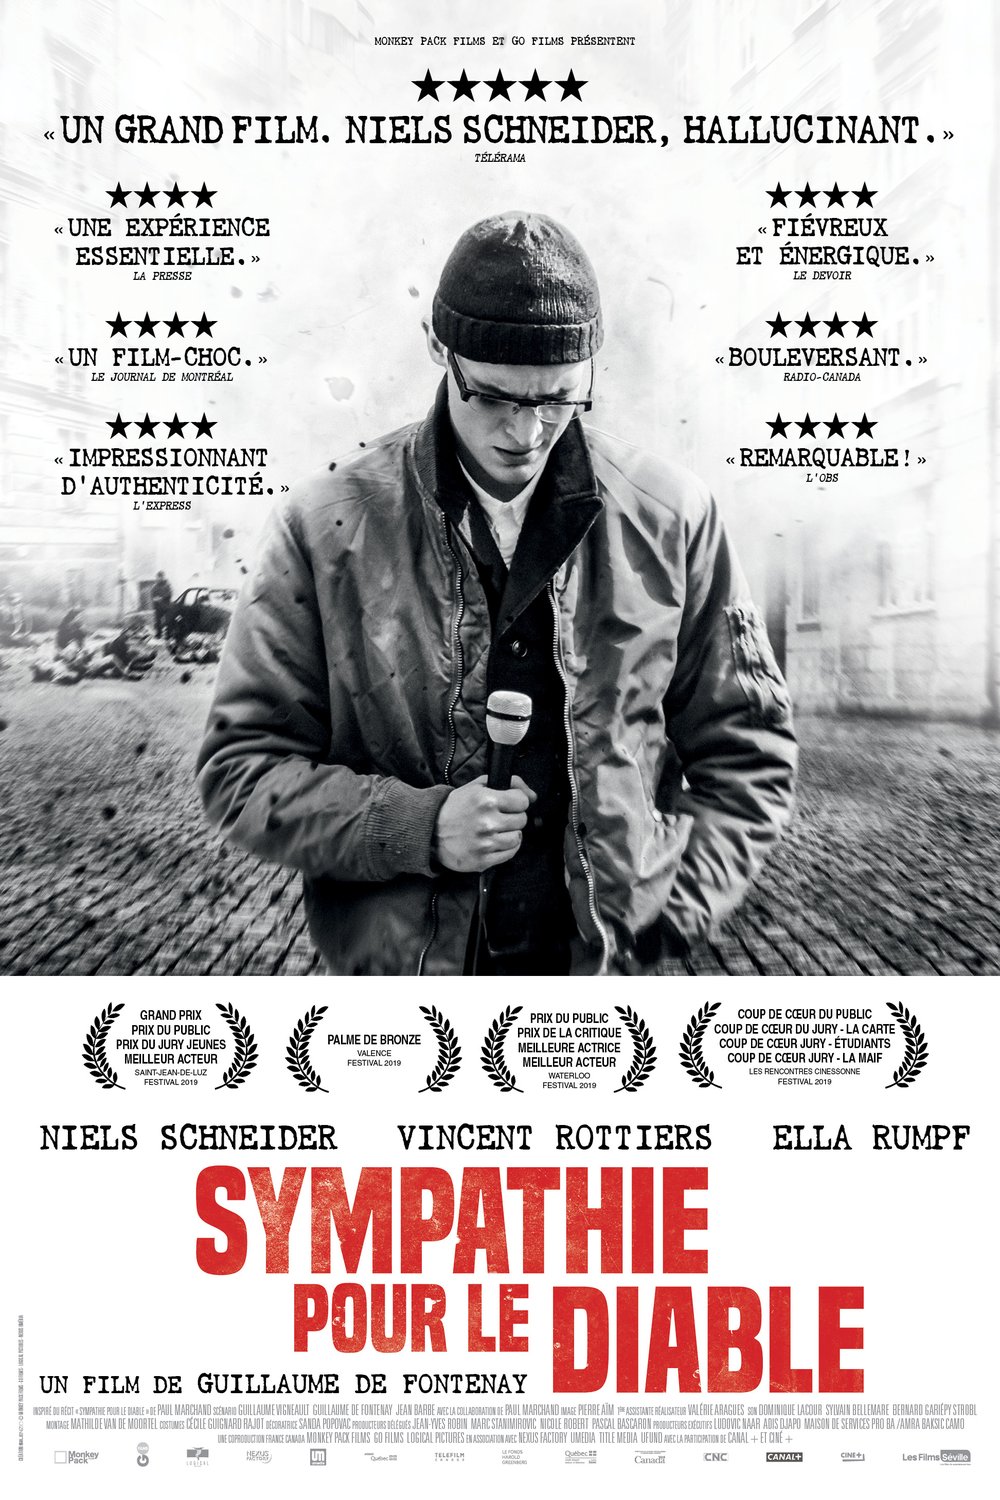 Poster of the movie Sympathie pour le diable